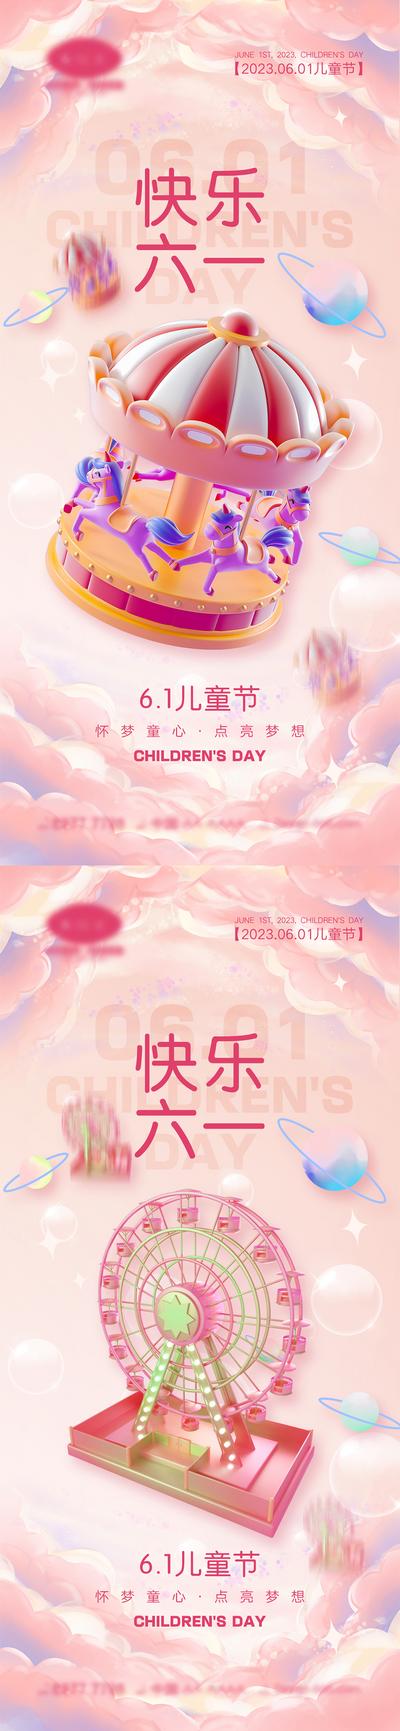 南门网 海报 系列 公立节日 61儿童节 快乐六一 童真 六一 棒棒糖 孩子 木马 风筝